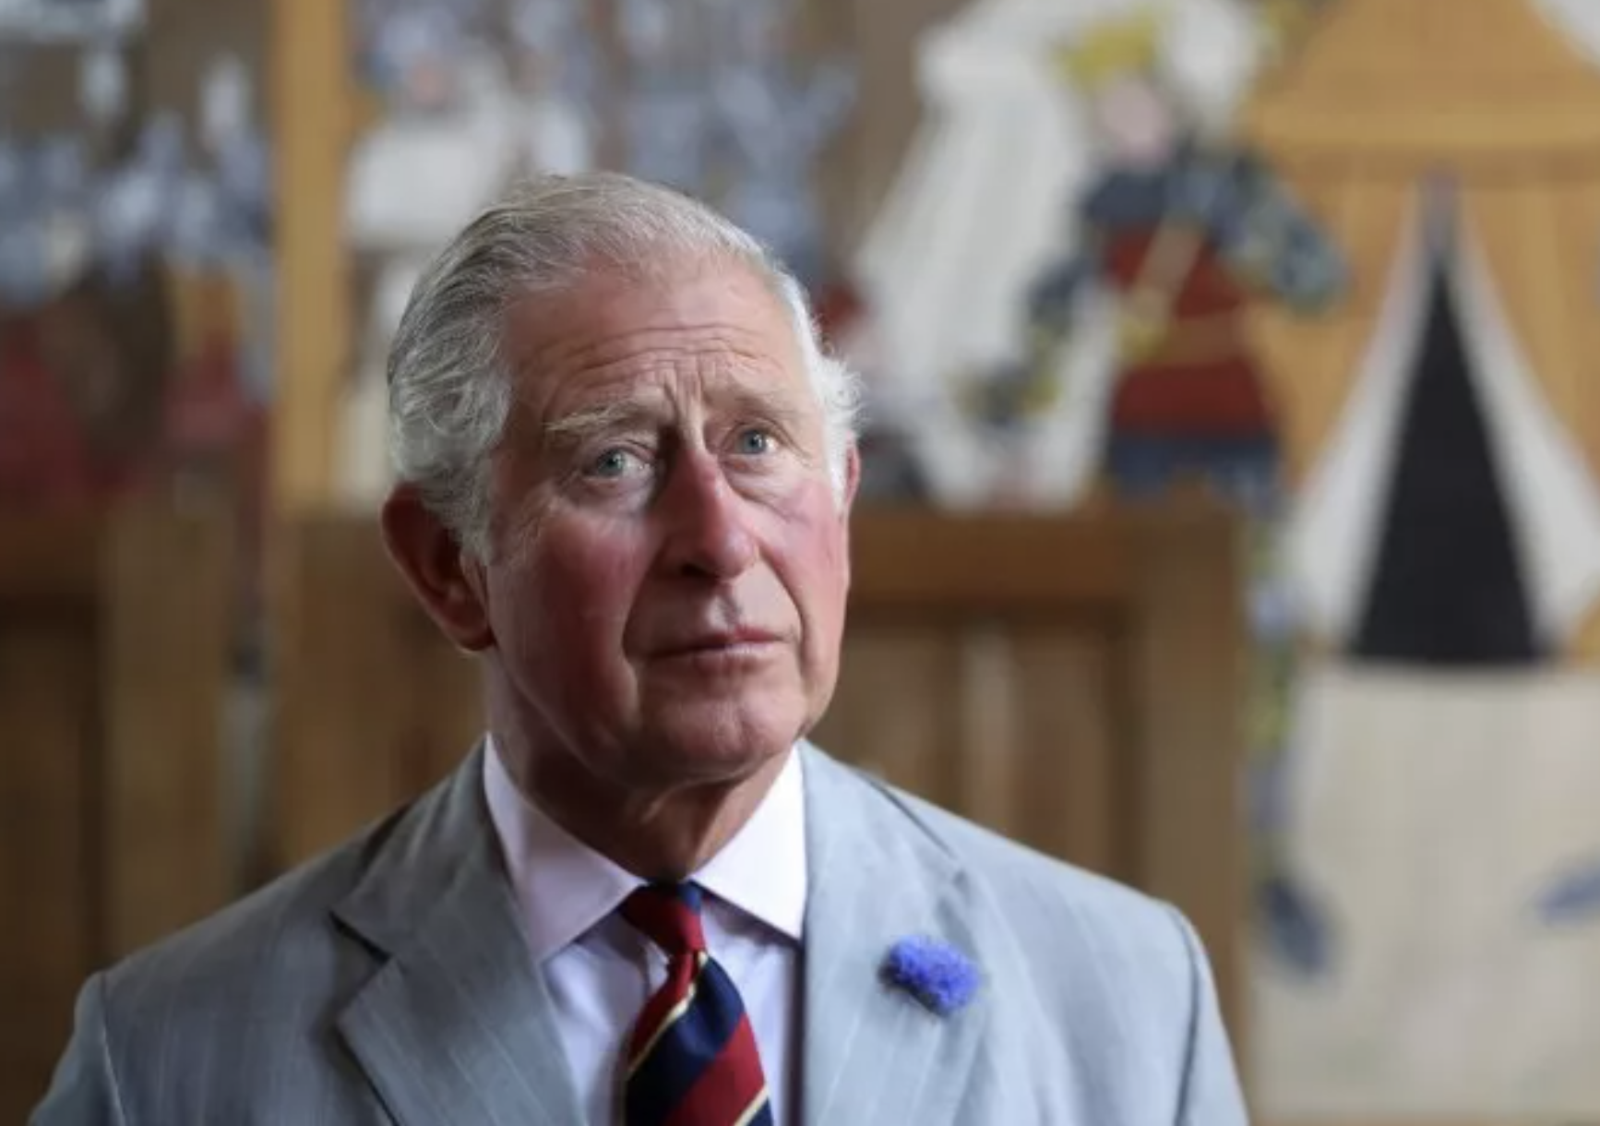 Vua Charles III trở thành người đứng đầu Hoàng gia Anh và là nguyên thủ quốc gia của các nước Khối Thịnh vượng chung sau khi Nữ hoàng Elizabeth II từ trần. Ảnh: Getty Images